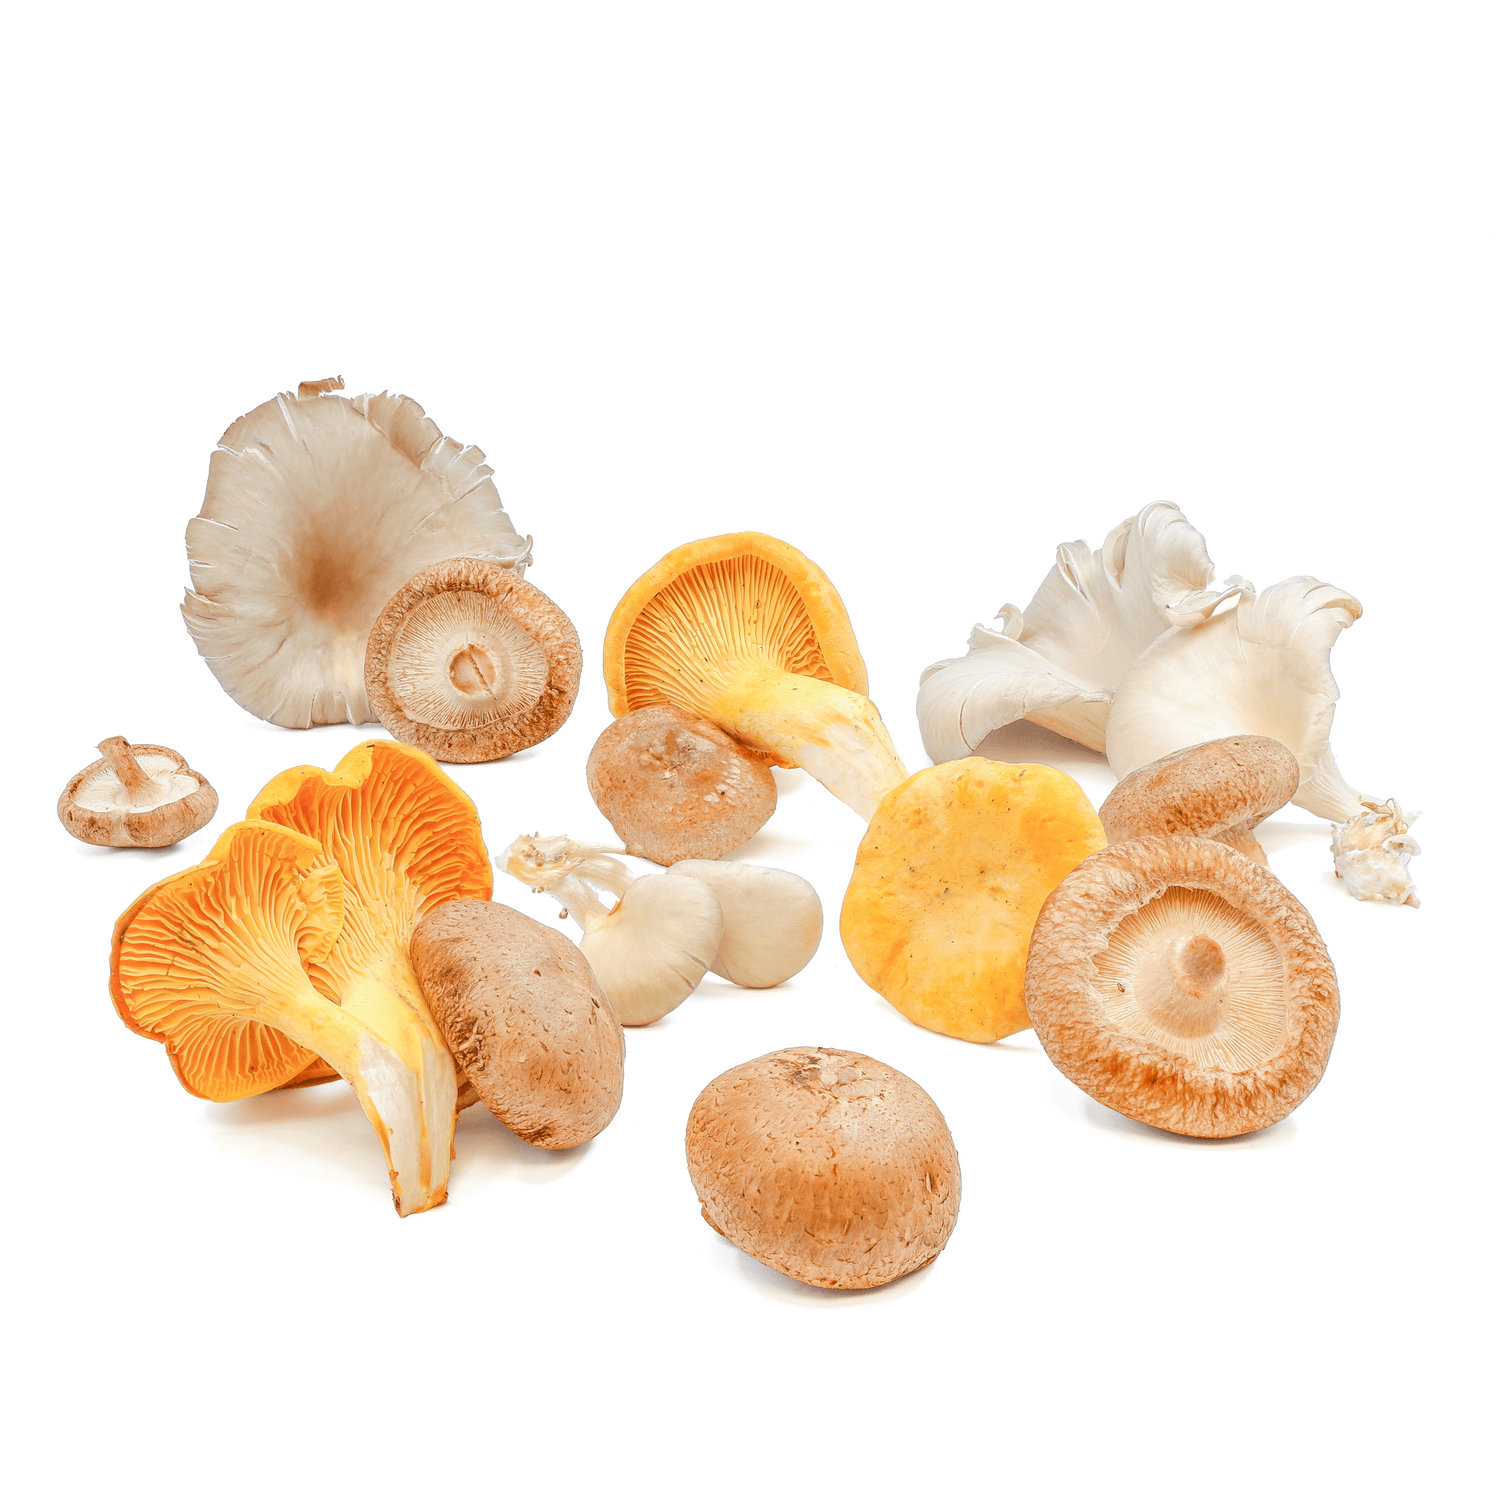 Fresh - Wild Mushrooms